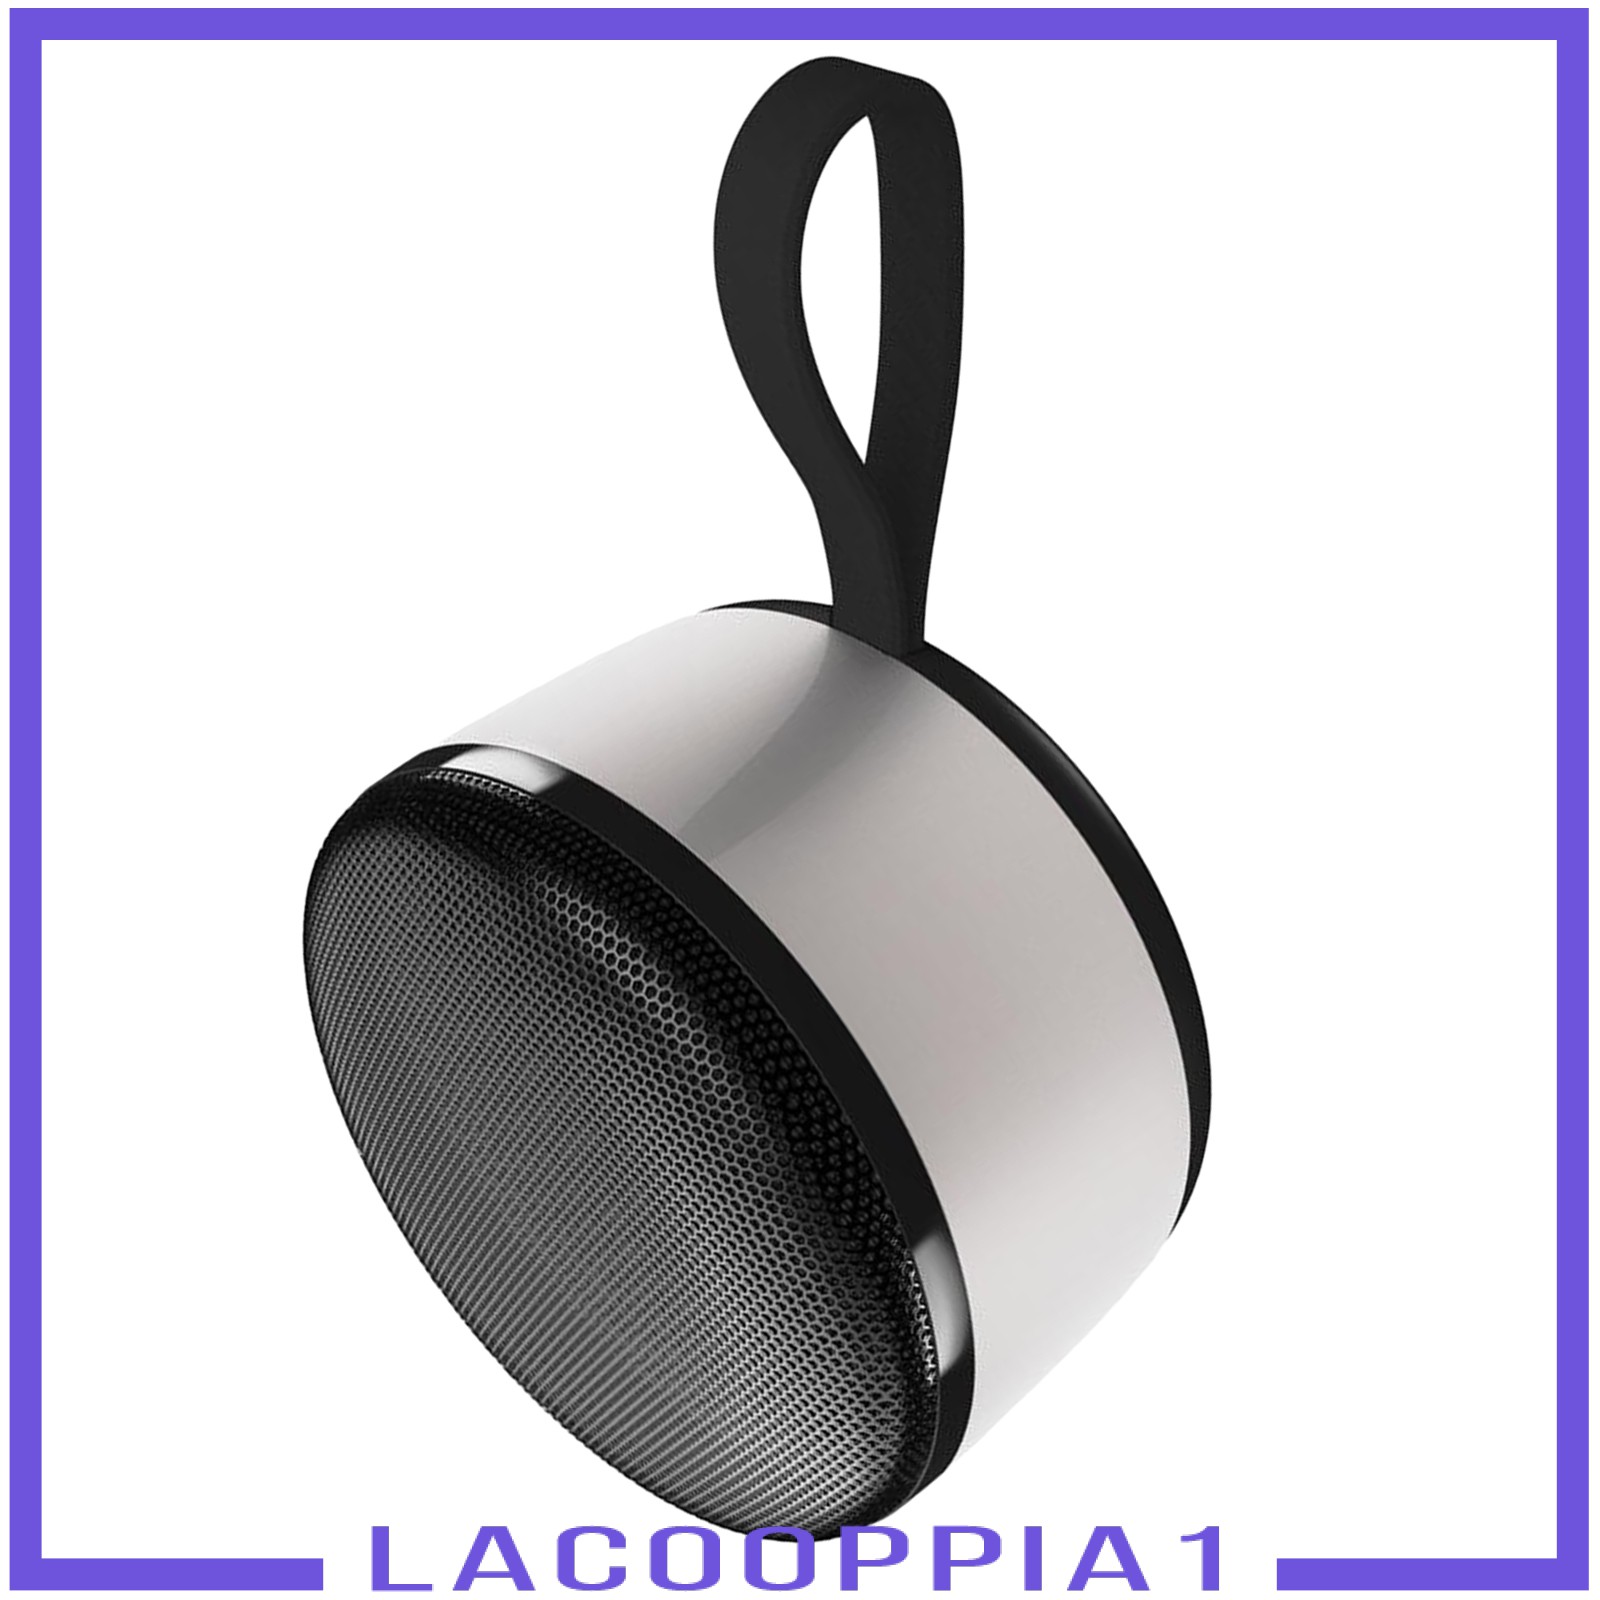 Loa Lapopoppia1 Kết Nối Bluetooth 5.0 Chống Bụi Âm Thanh Siêu Trầm